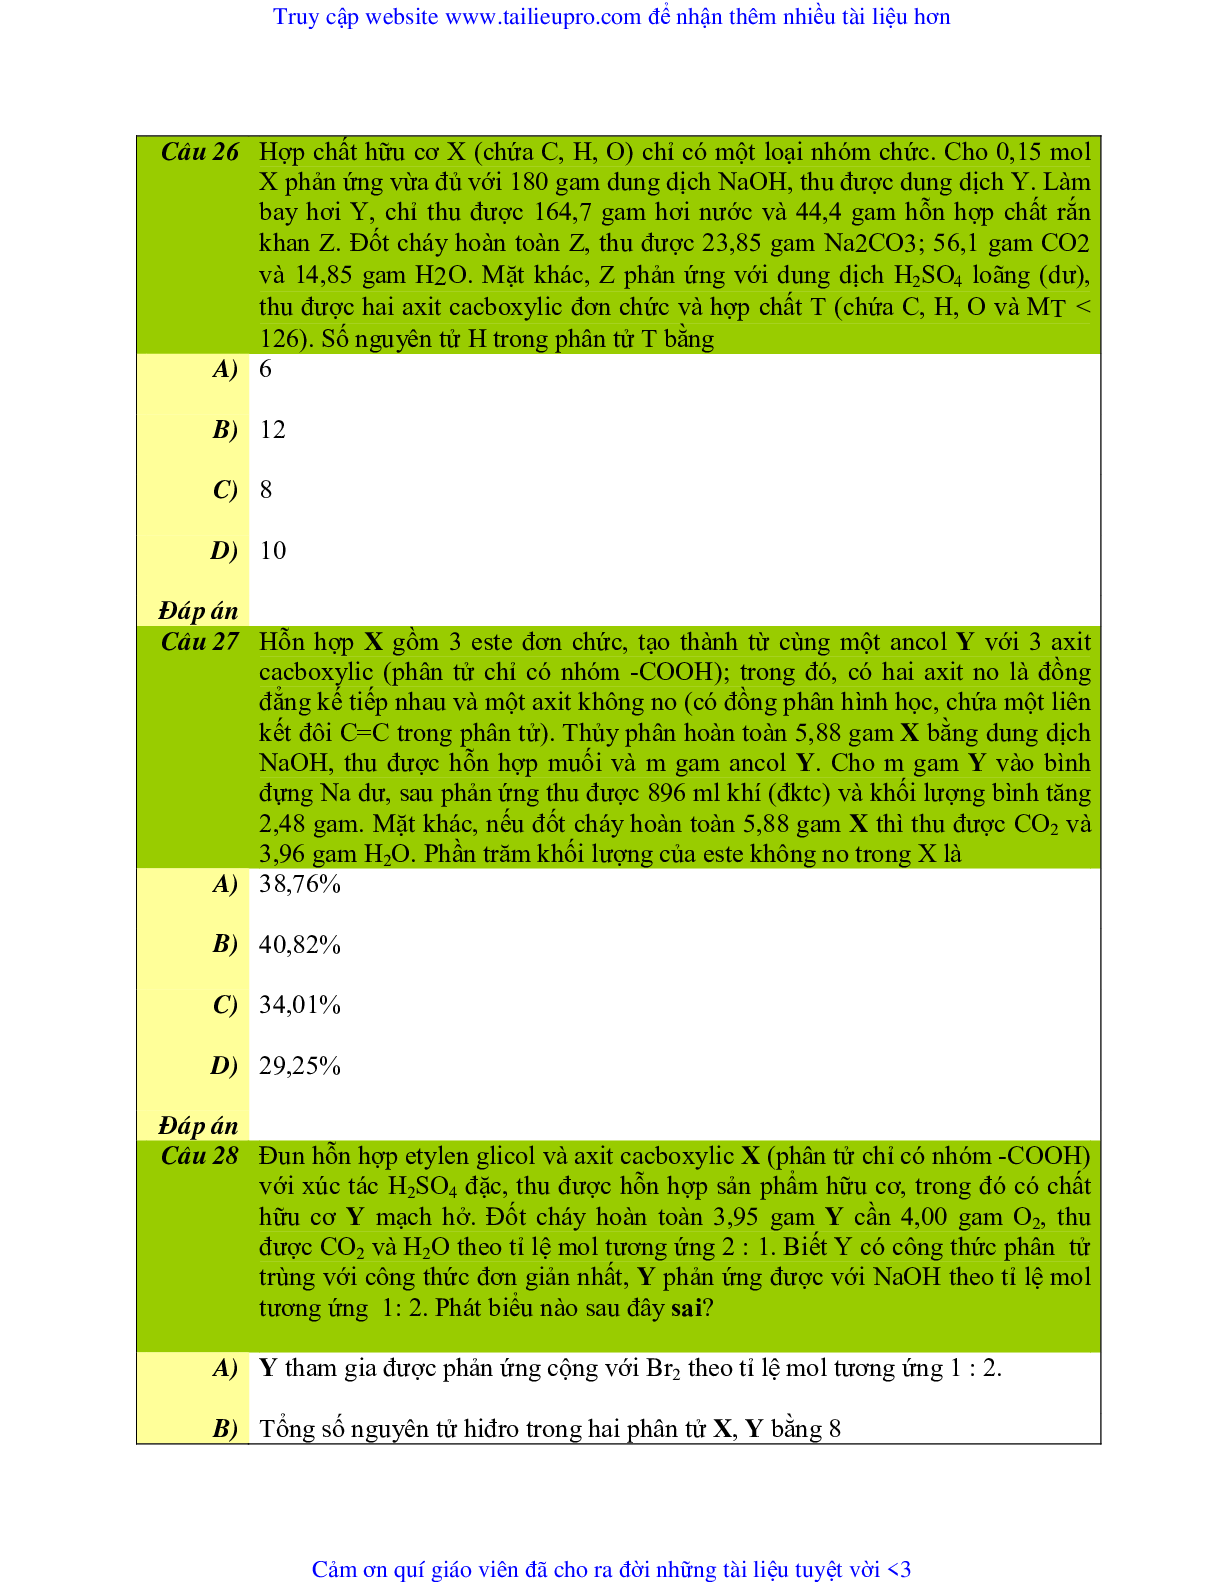 Chuyên đề  Este môn Hóa học lớp 12 (trang 10)